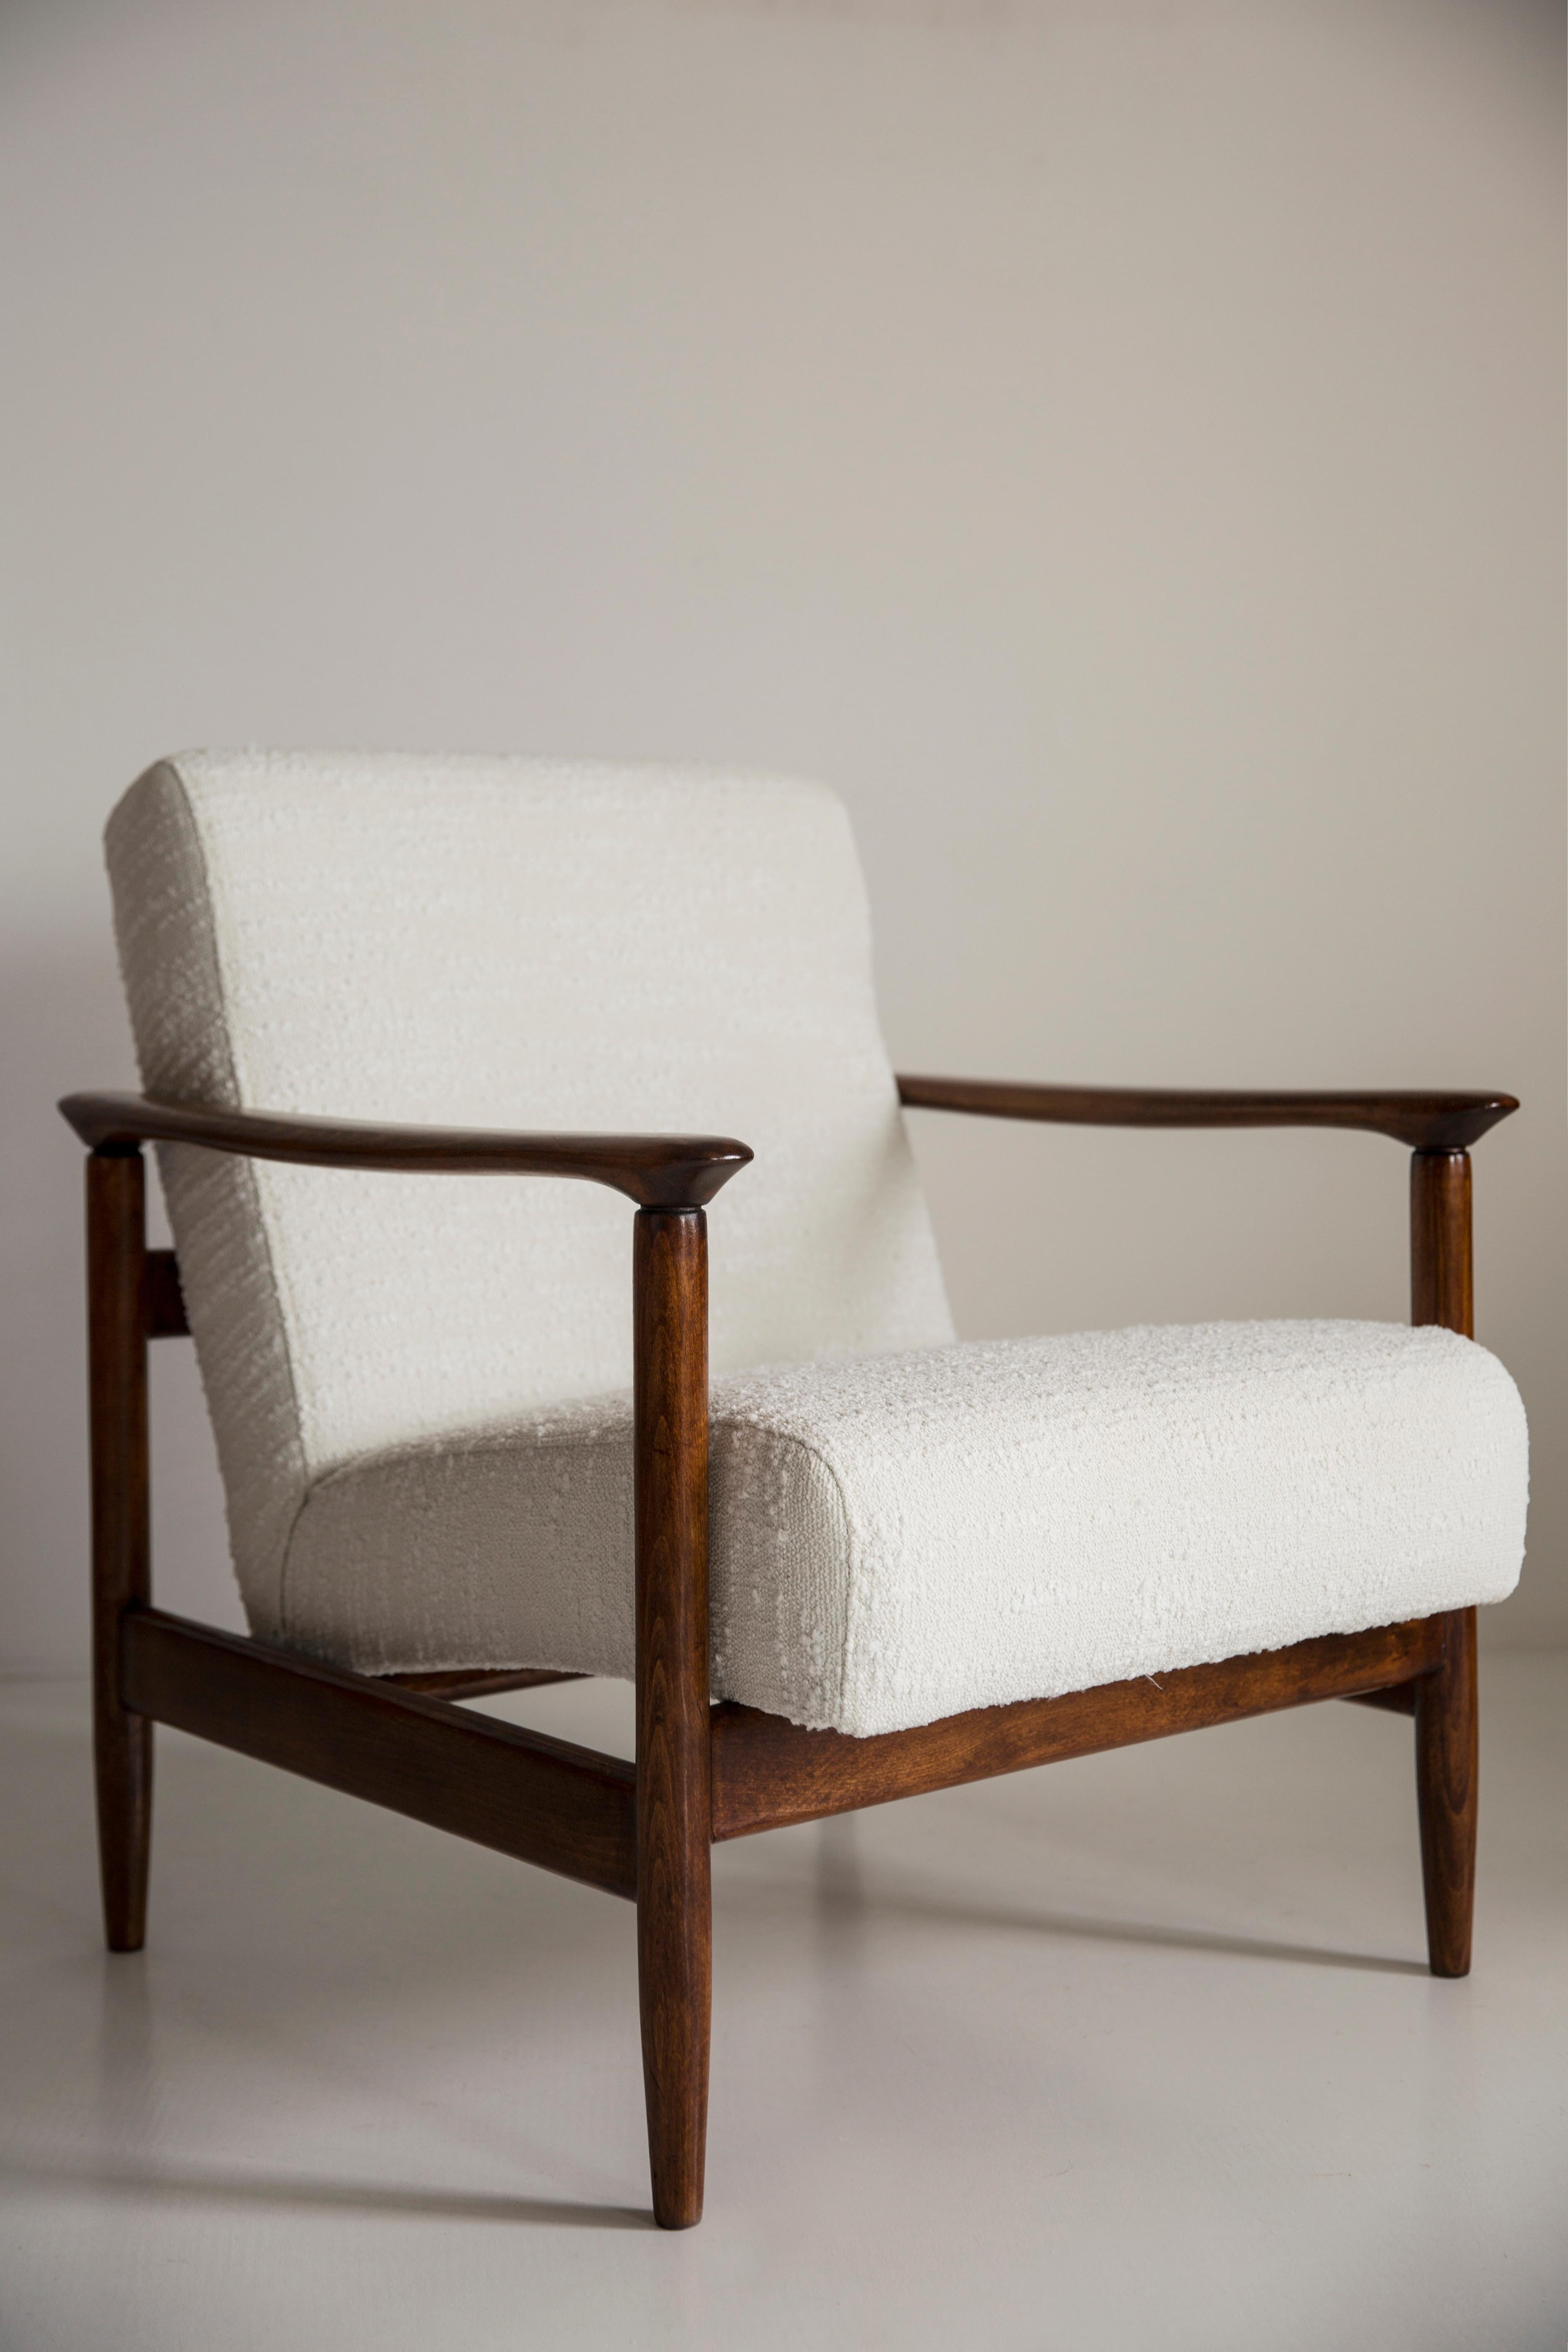 Magnifique fauteuil en boucle blanc GFM-142, conçu par Edmund Homa, architecte polonais, concepteur de design industriel et d'architecture d'intérieur, professeur à l'Académie des beaux-arts de Gdansk. 

Le fauteuil a été fabriqué dans les années